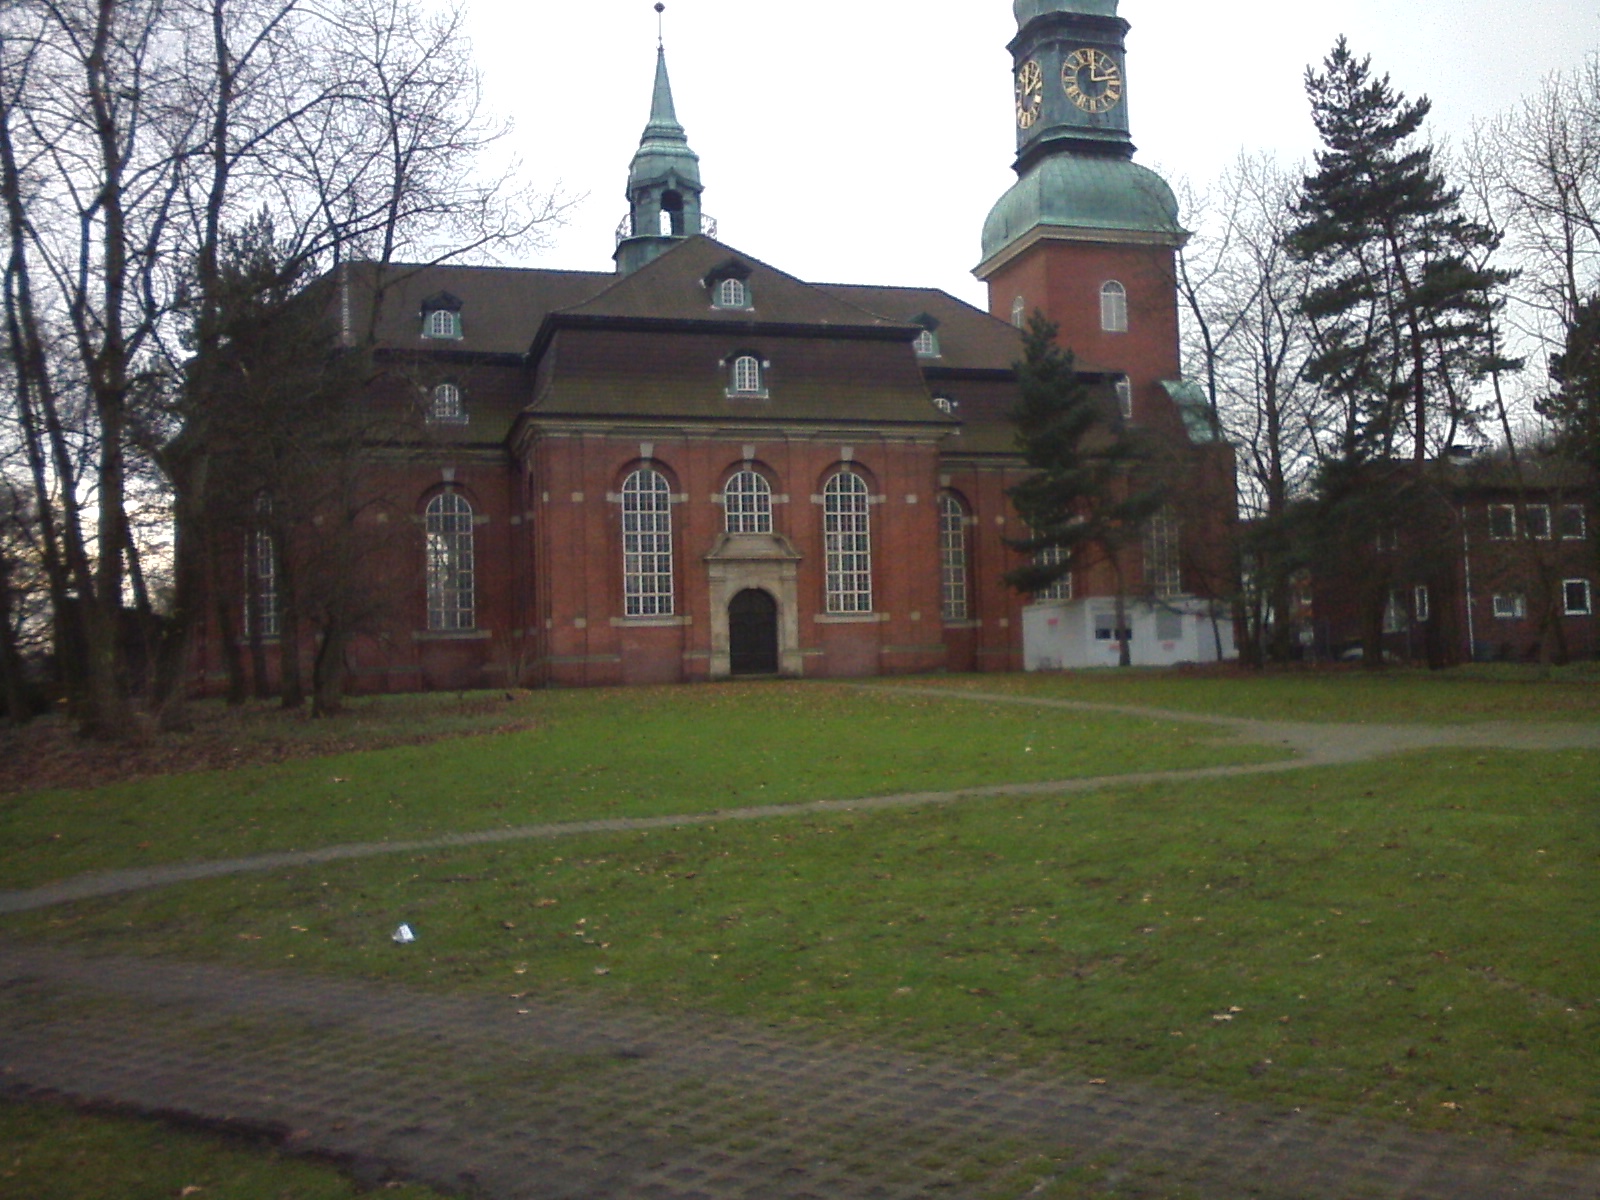 Bild 1 Hauptkirche St. Trinitatis - Ev.-Luth. Haupt-Kirchengemeinde St. Trinitatis Altona in Hamburg-Altona